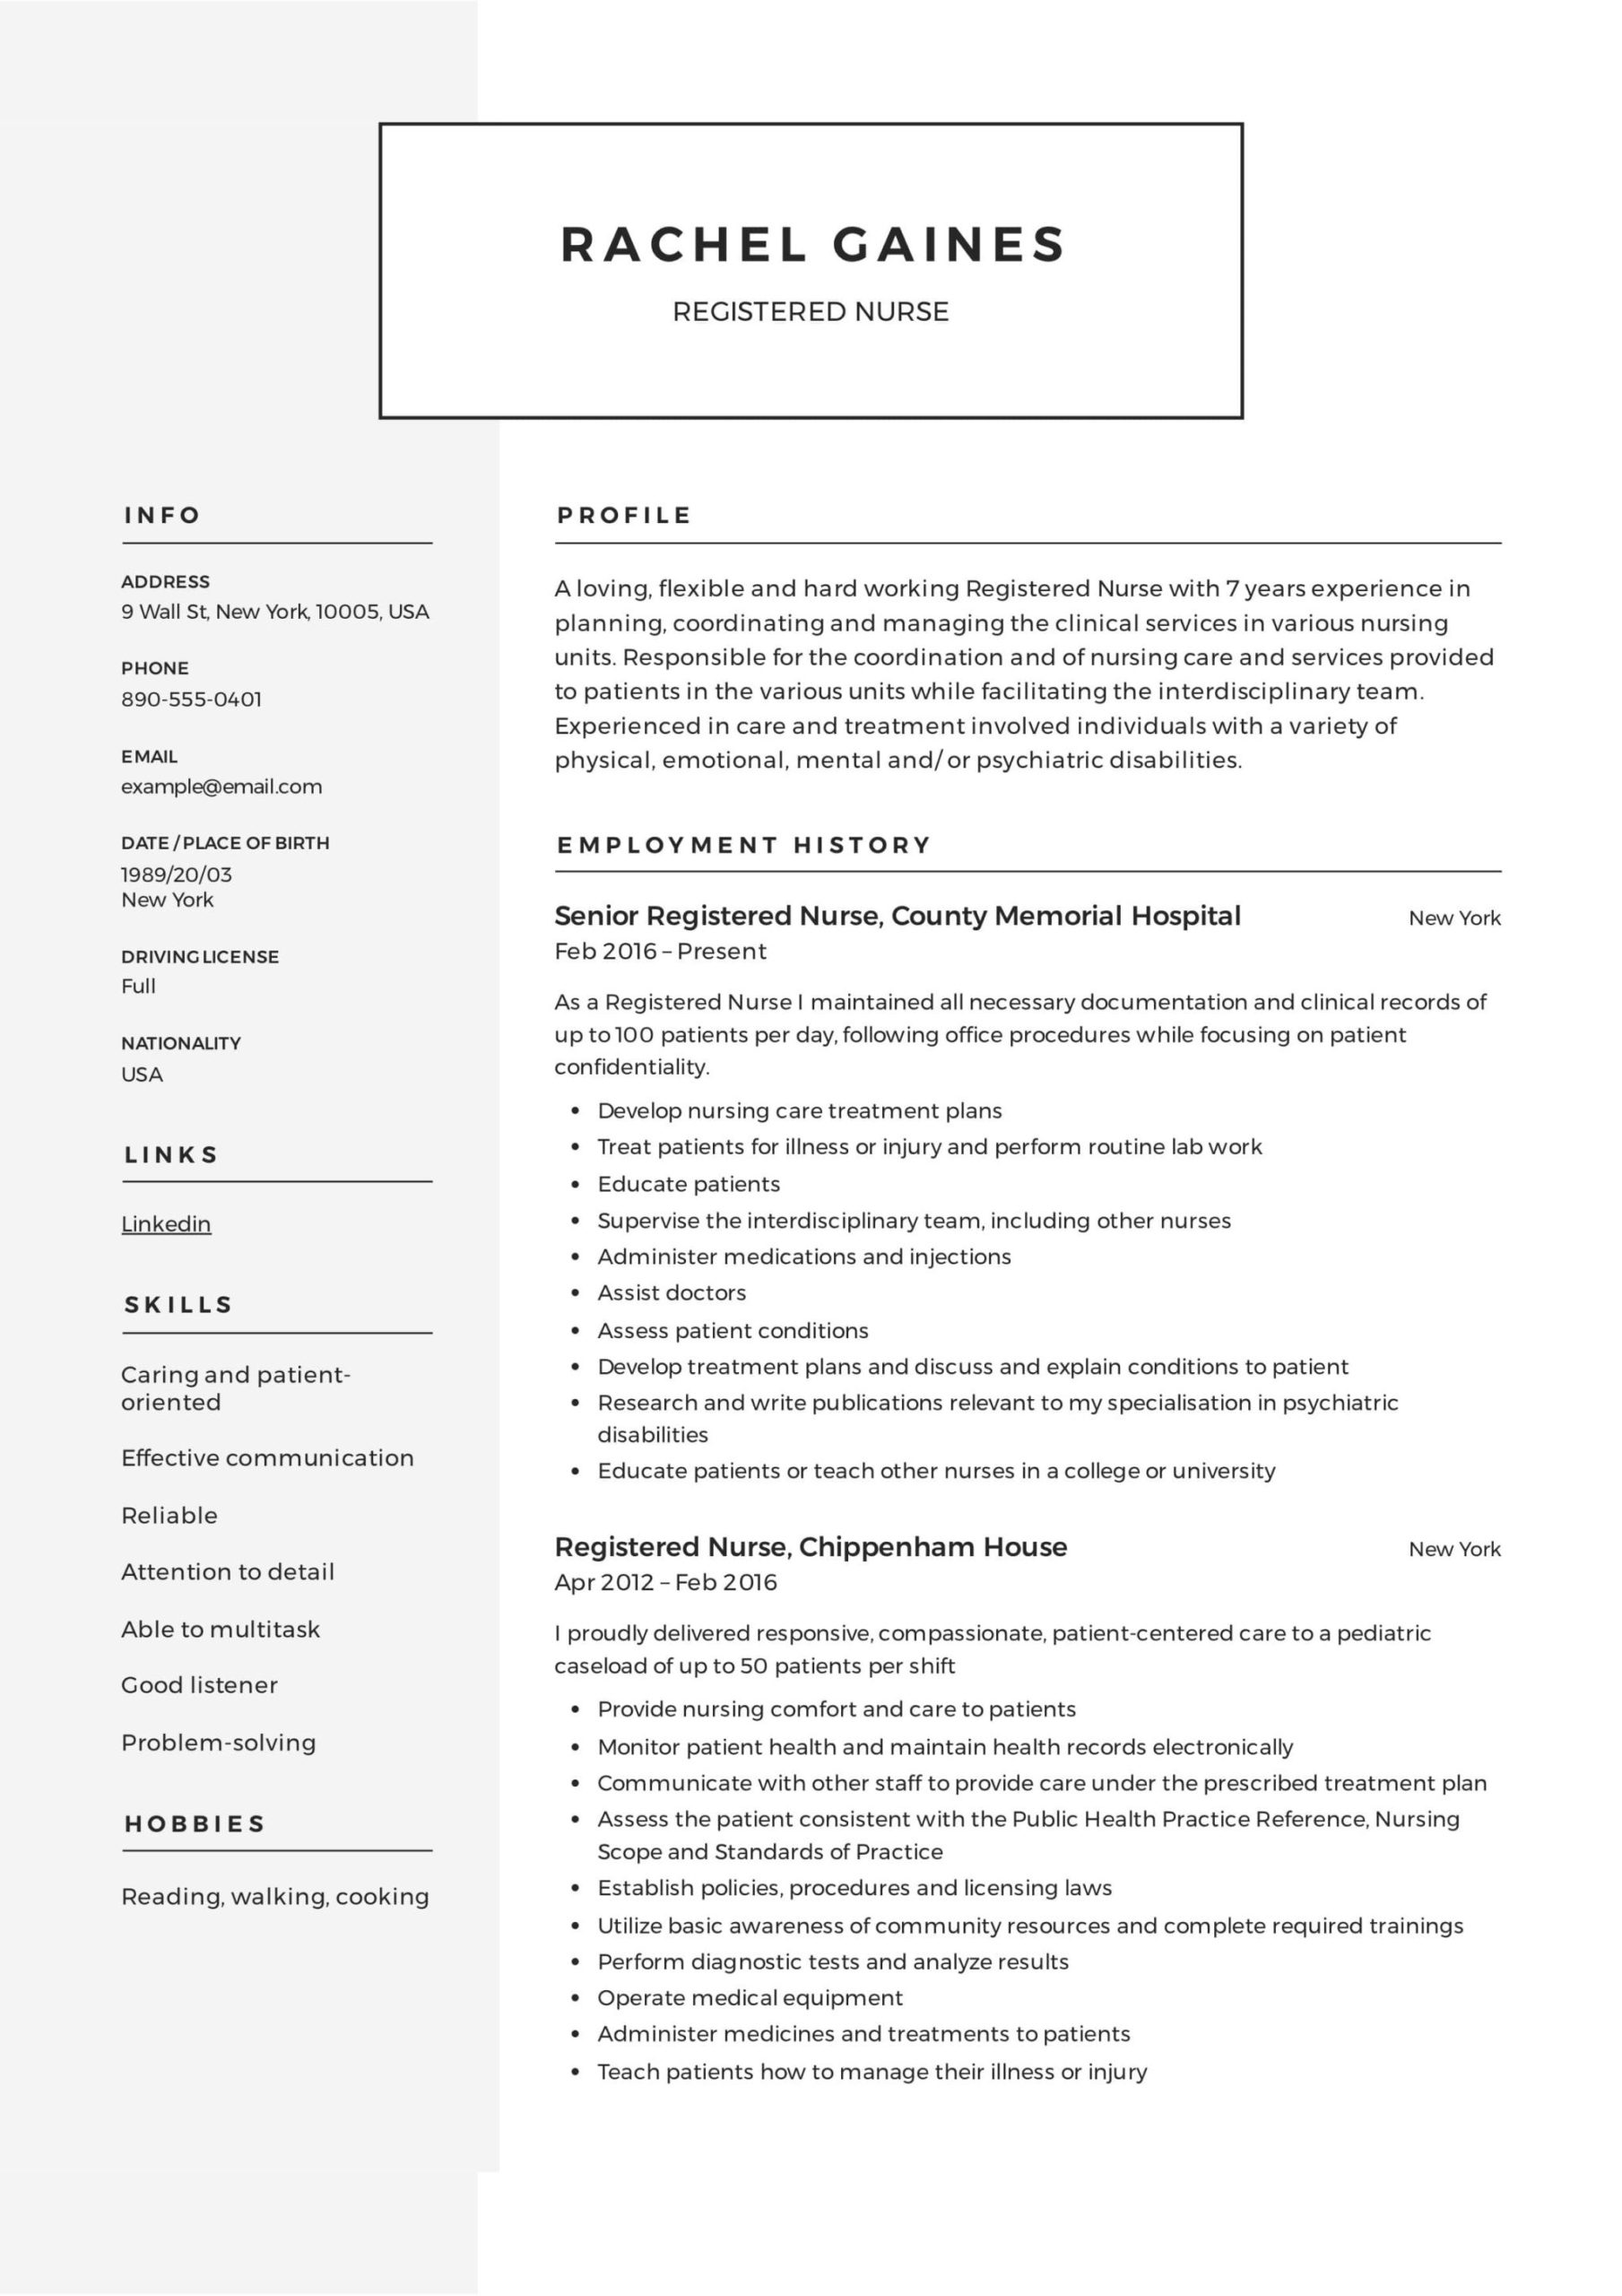 Sample Registered Nurse Resume without Experience Registered Nurse Resume Examples & Writing Guide  12 Samples Pdf